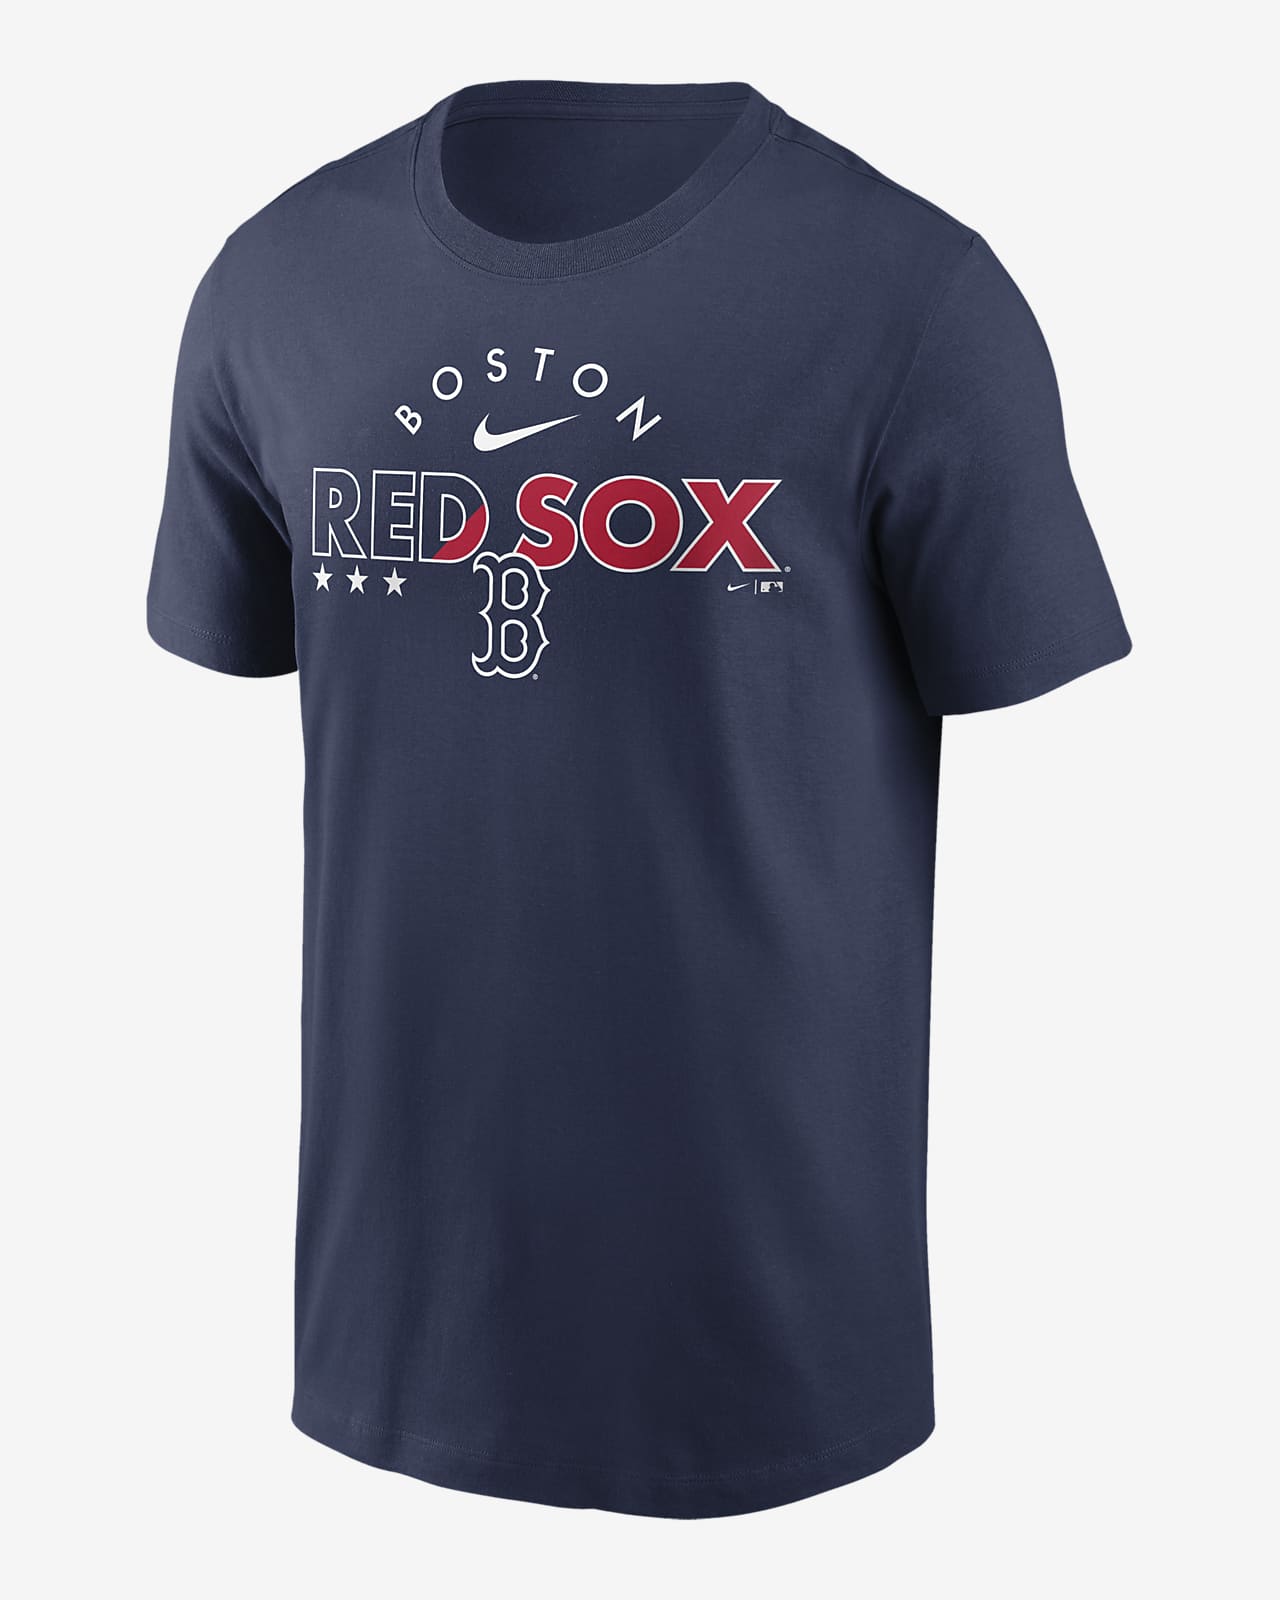 Nike Americana (MLB Boston Red Sox) Men's TShirt.